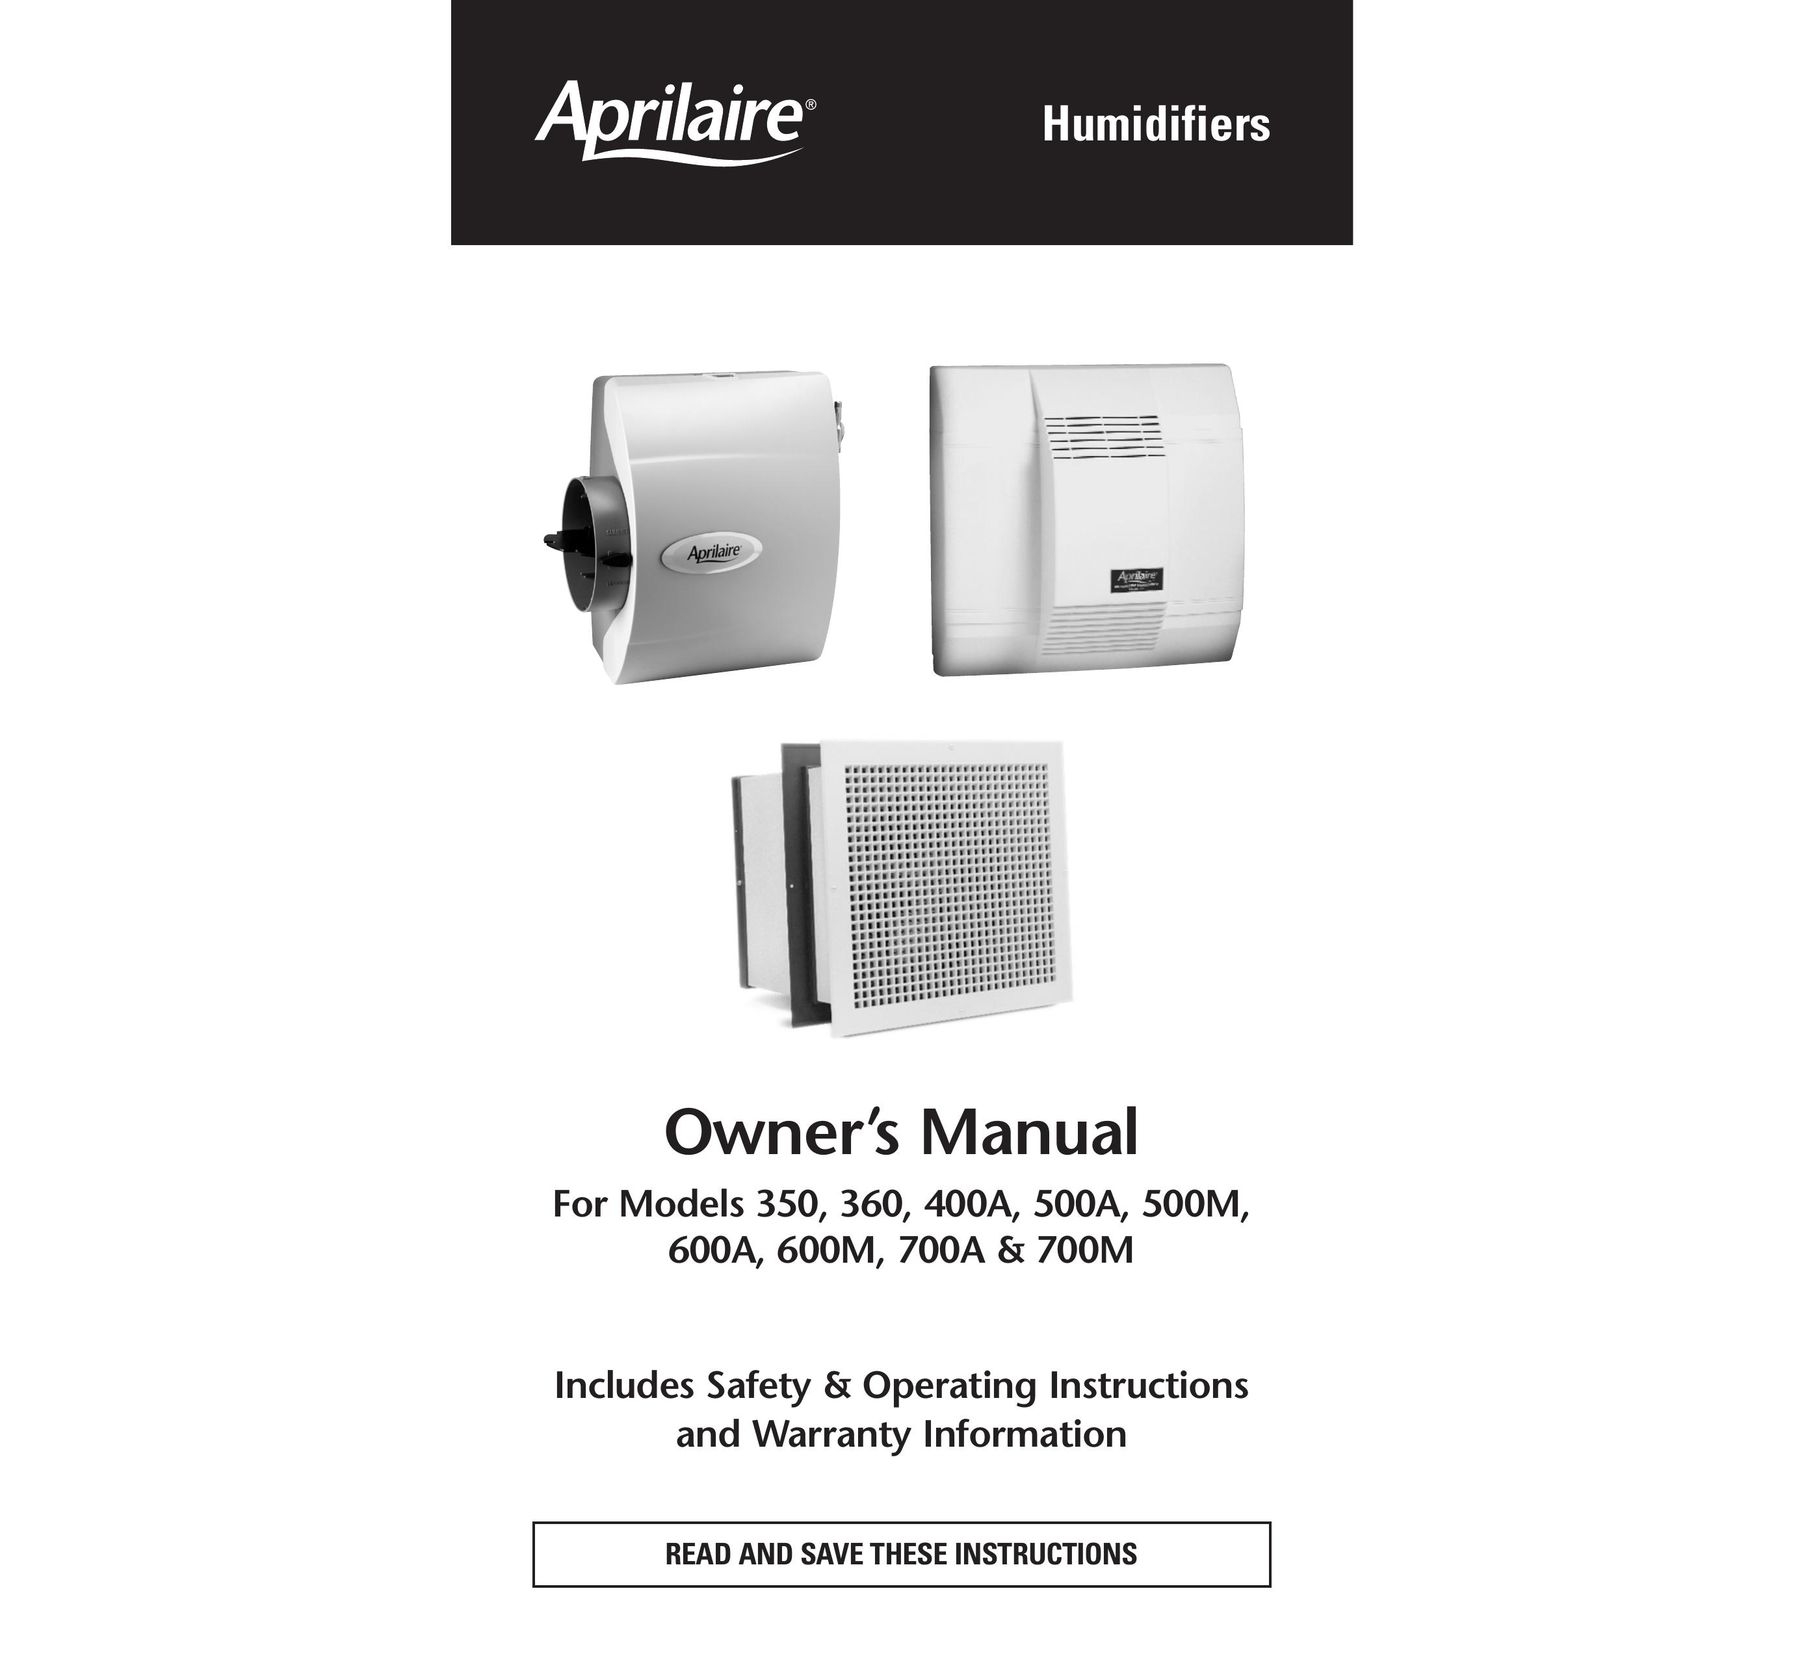 Aprilaire 600A Dehumidifier User Manual